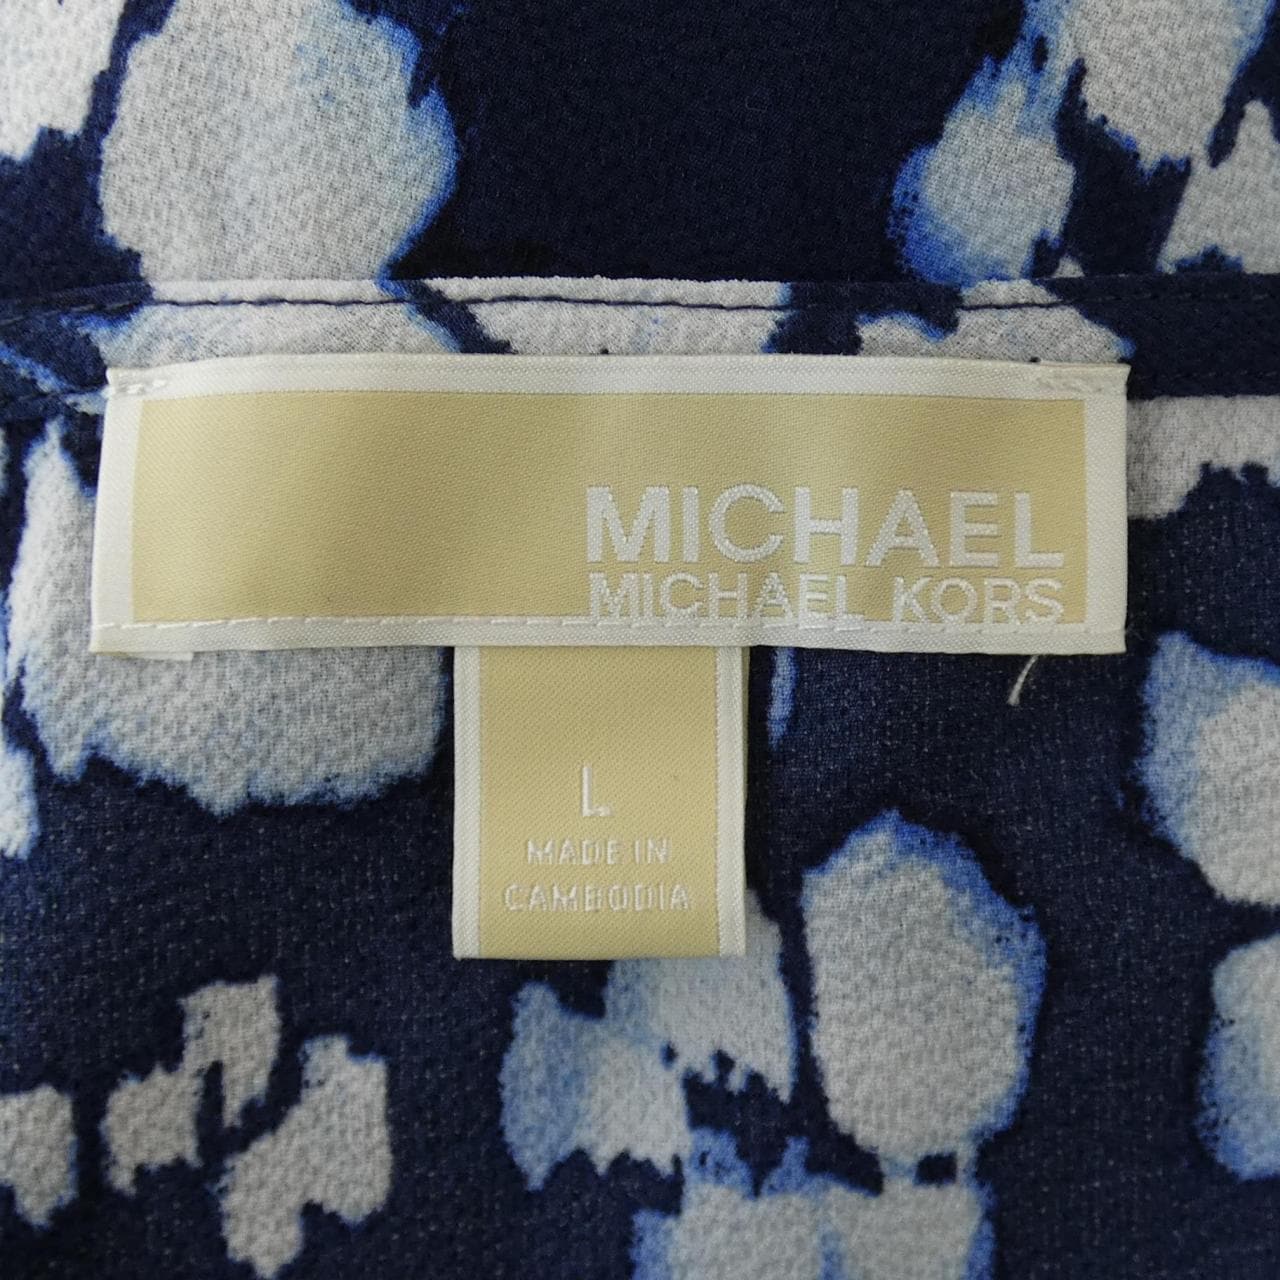 MICHAEL MICHAEL KORS Michael Michael Kors) 邁克爾·邁克爾·科爾斯 (Michael Michael Kors) 海賊王